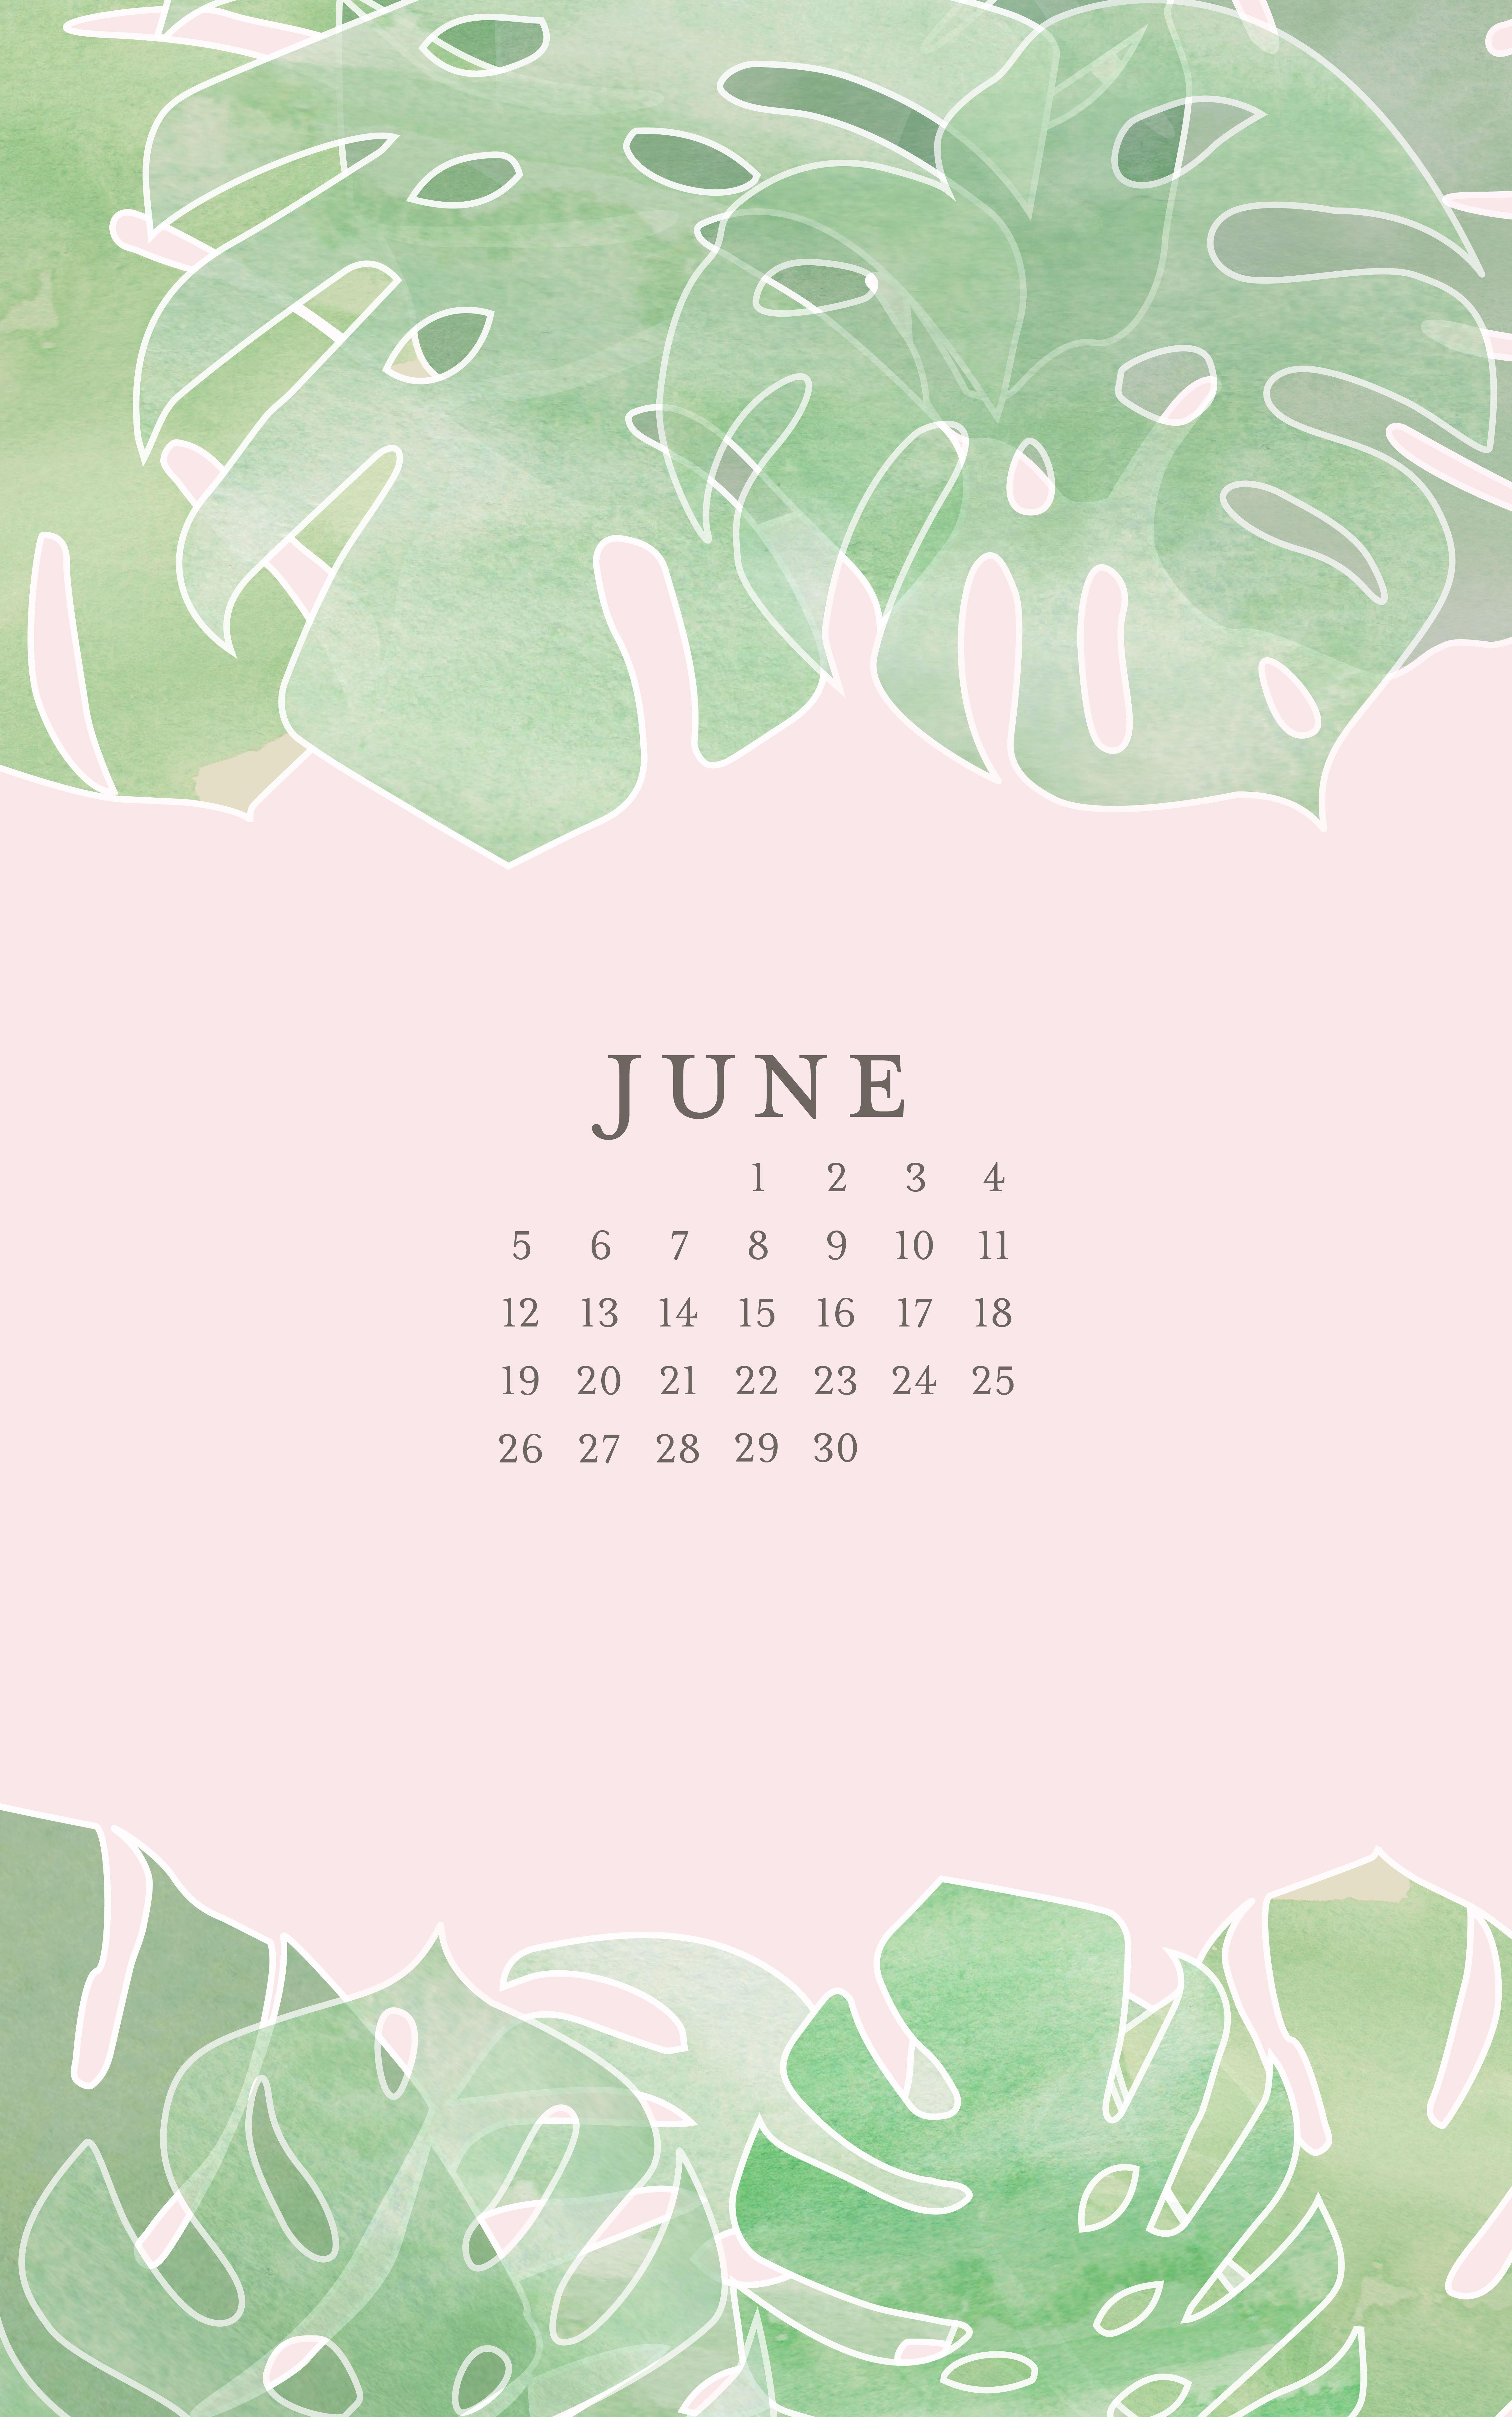 June 2016 Free Calendars and Wallpaper